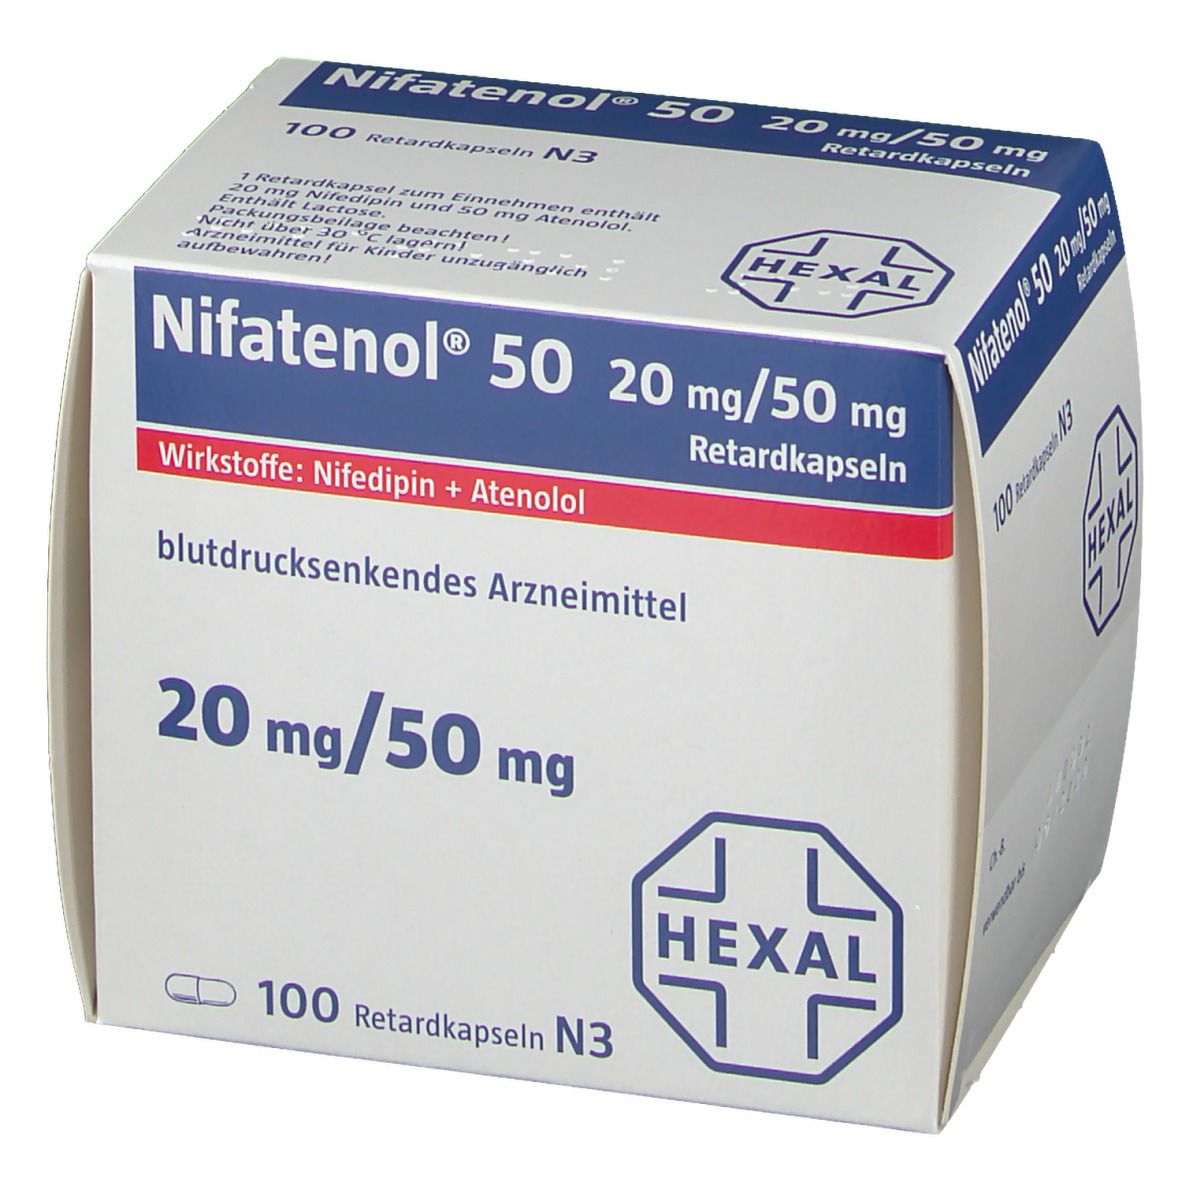 Nifatenol 50 Retardkapseln